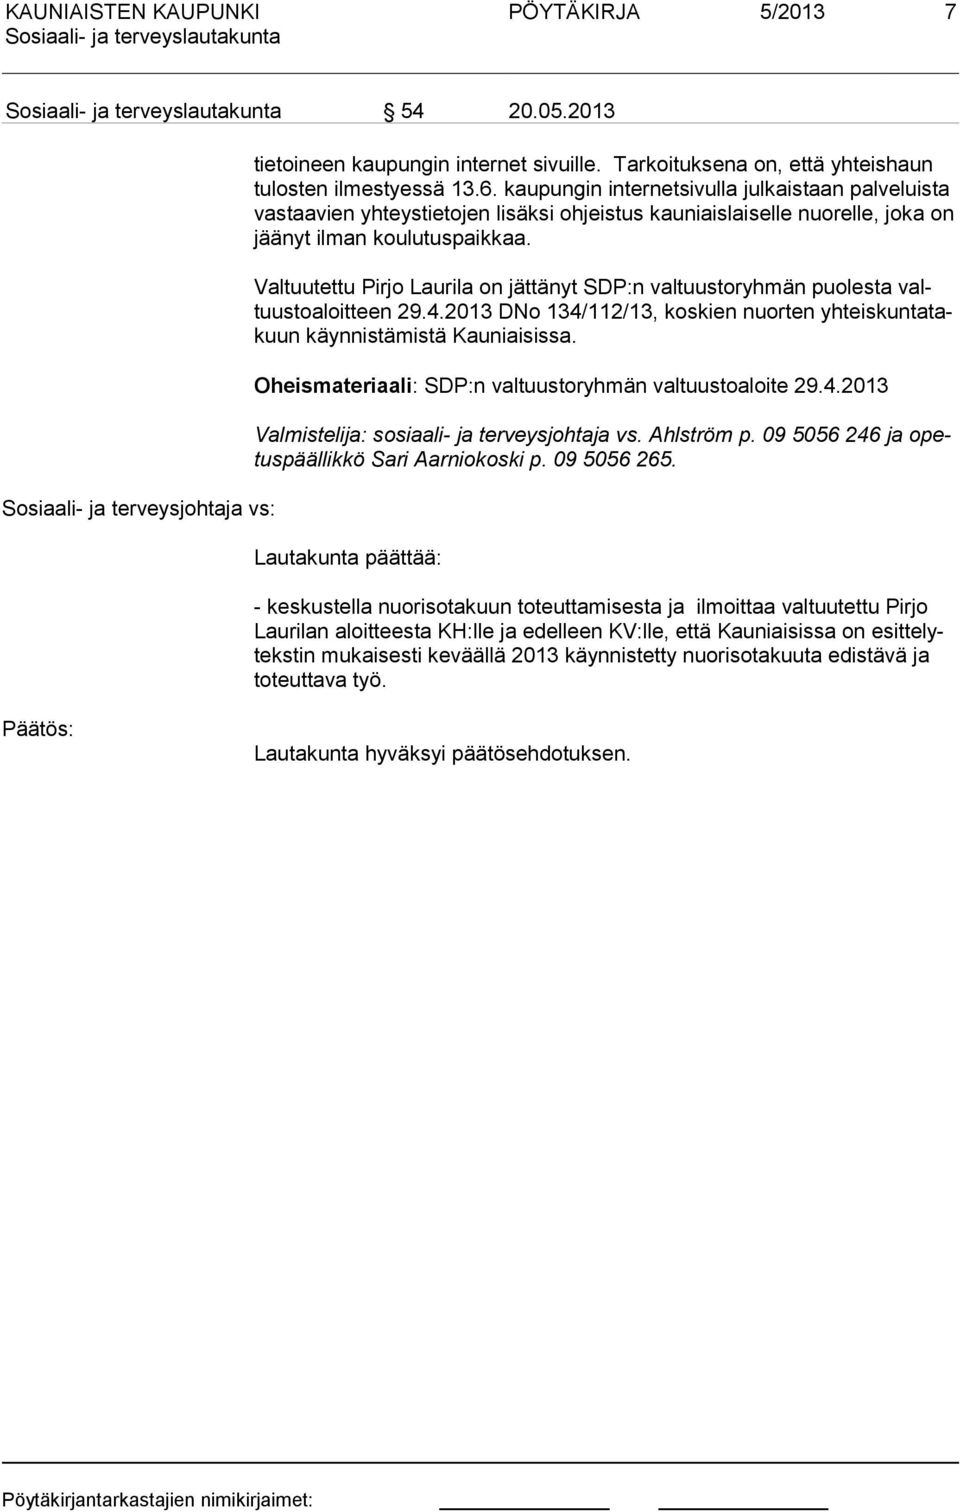 Valtuutettu Pirjo Laurila on jättänyt SDP:n valtuustoryhmän puolesta valtuustoaloitteen 29.4.2013 DNo 134/112/13, koskien nuorten yhteiskuntatakuun käynnistämistä Kau niaisissa.